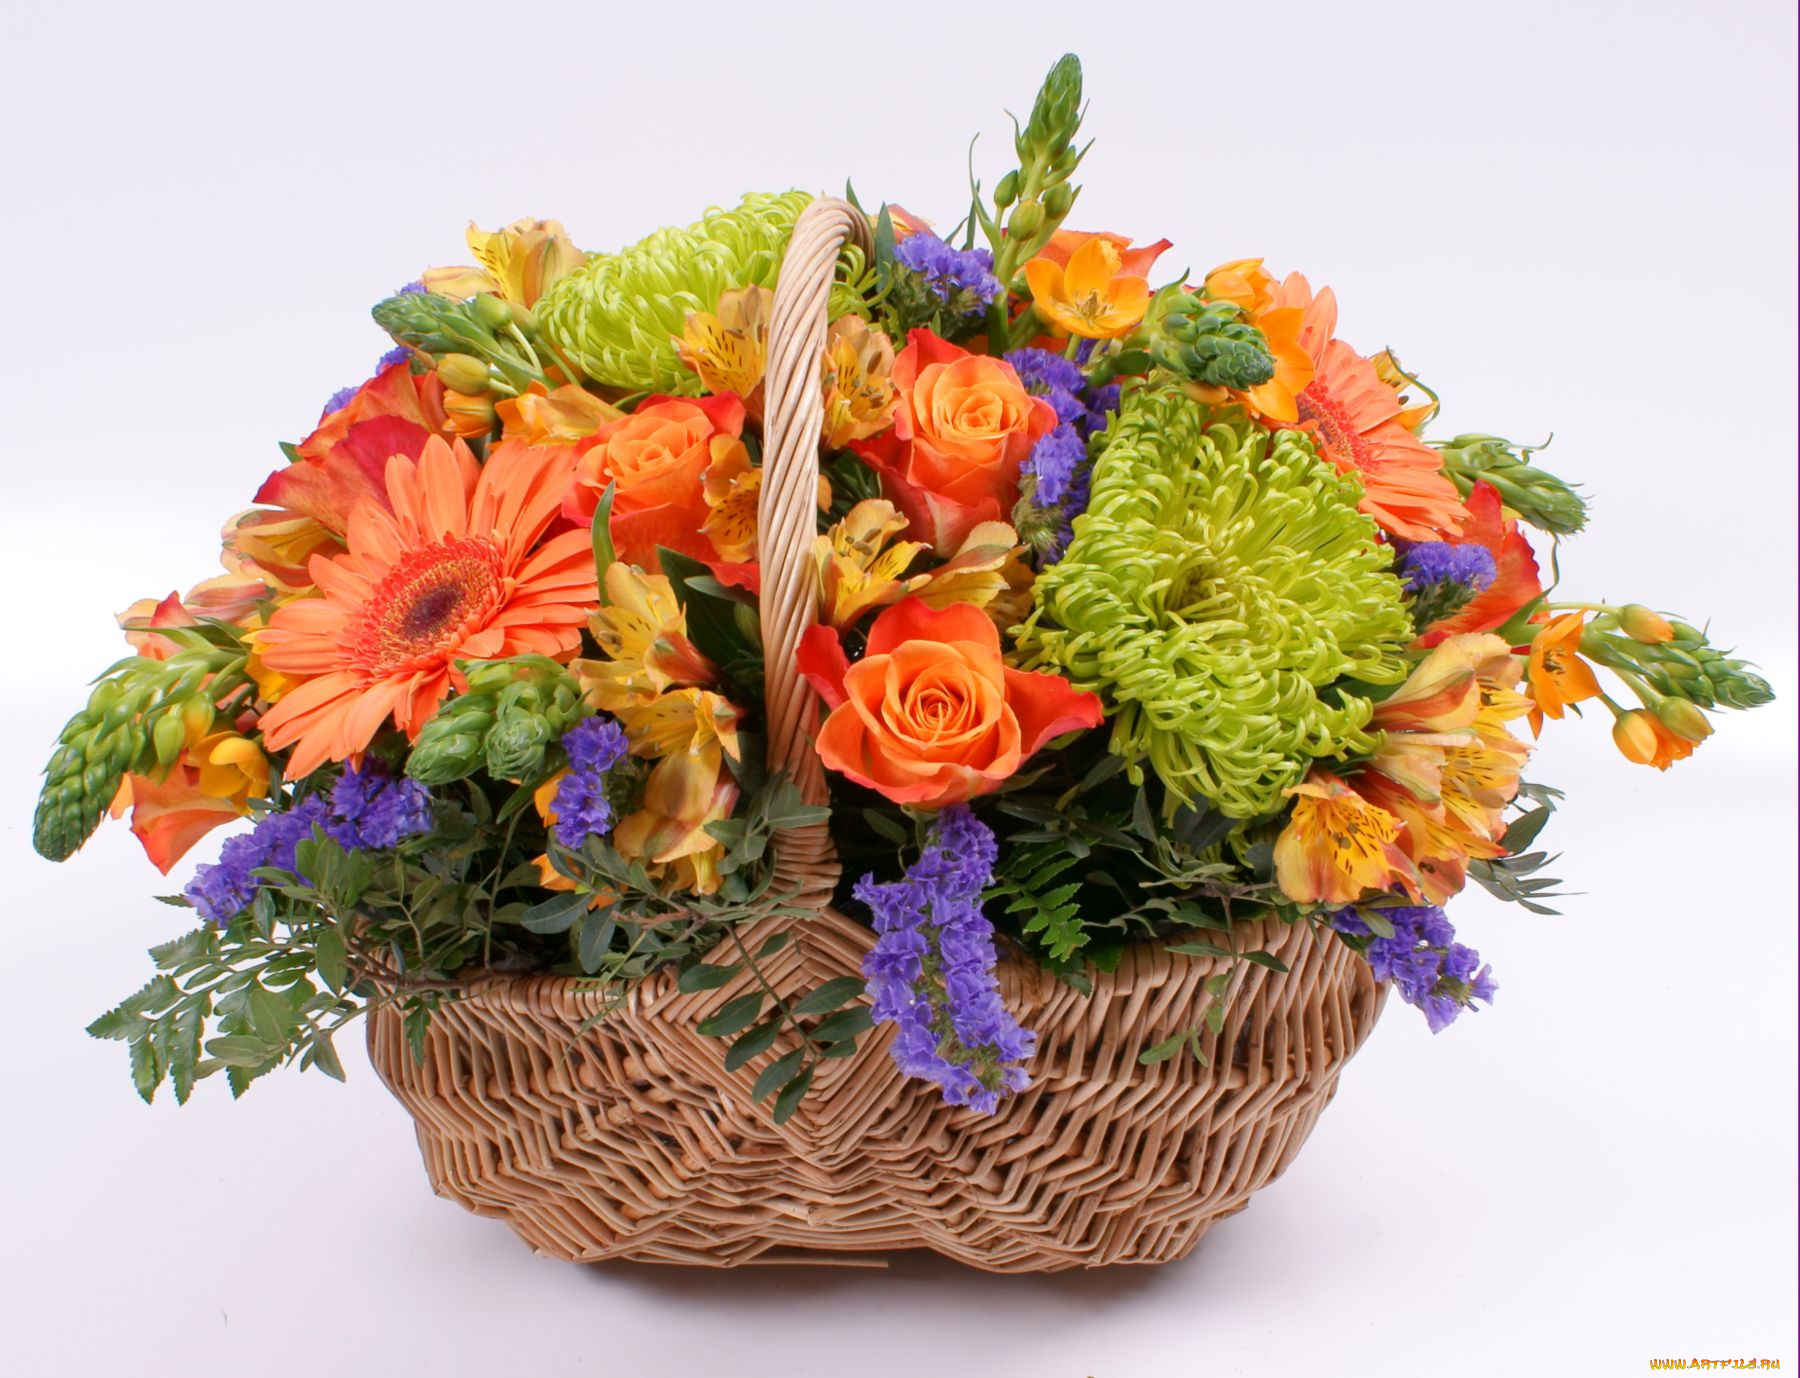 цветы, букеты, композиции, альстромерия, хризантемы, герберы, розы, корзина